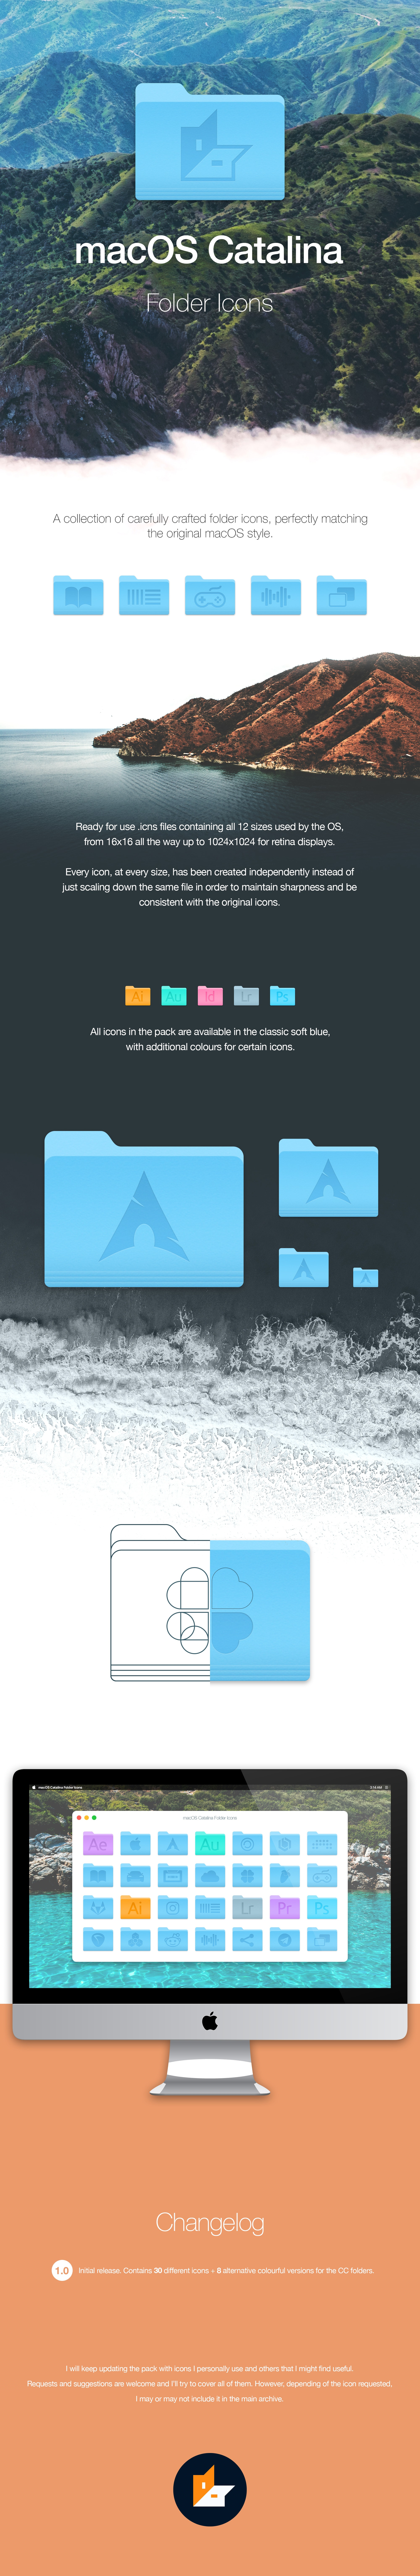 Mac os x folder icons download free